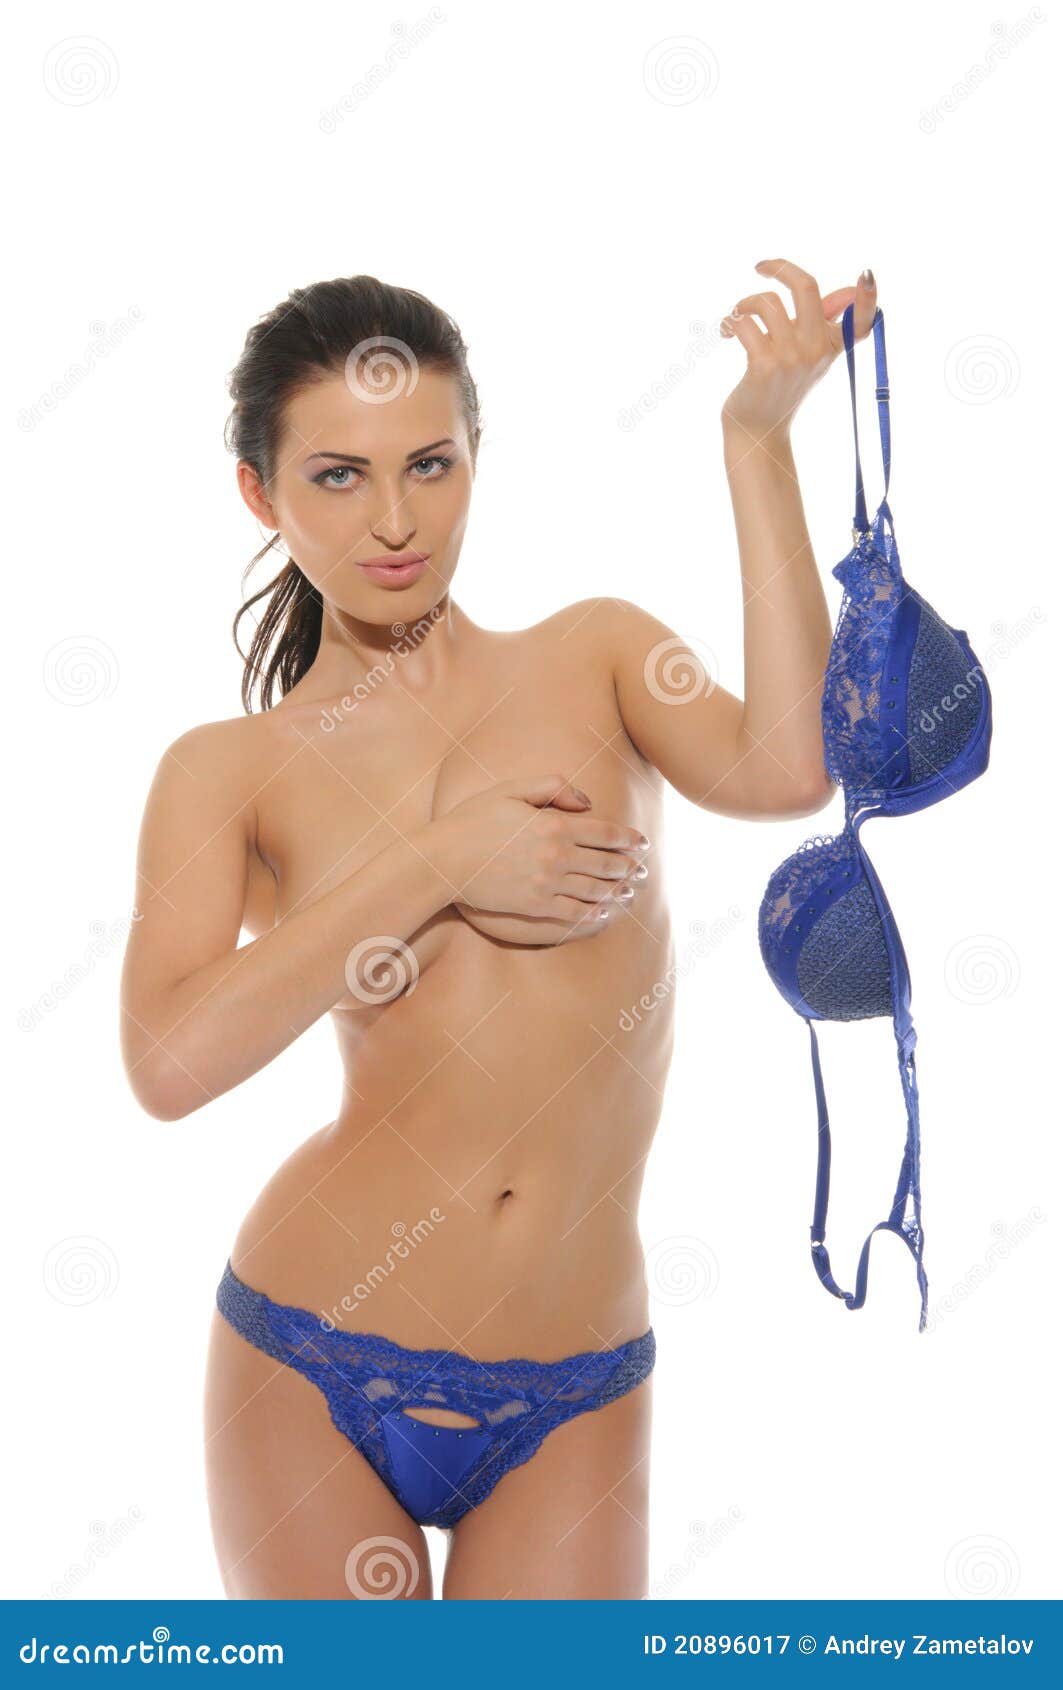 Best of Women taking off bras